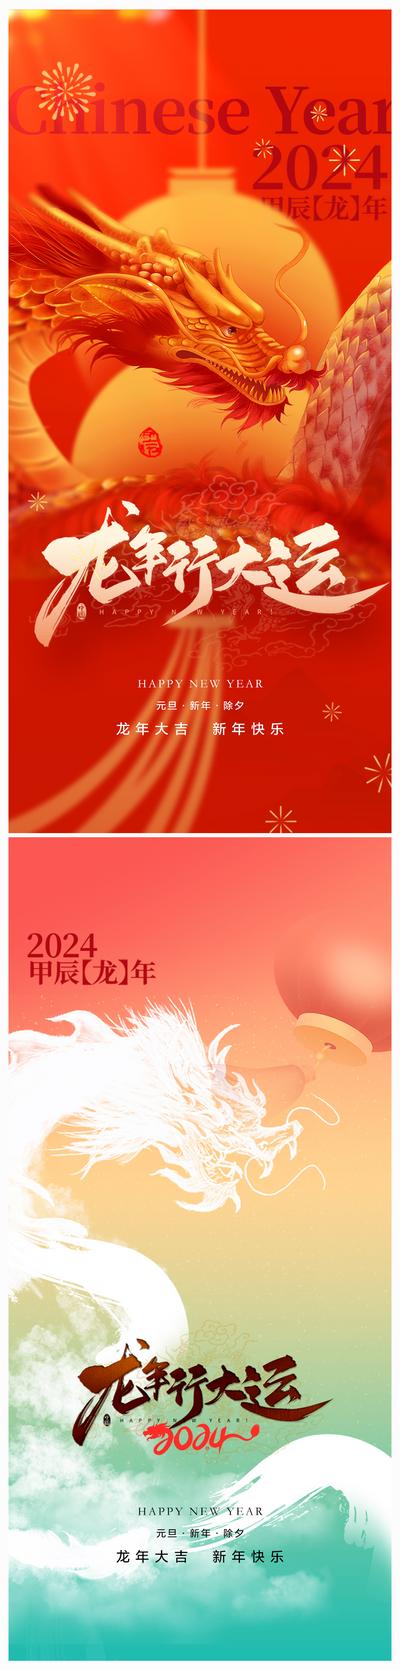 南门网 海报 中国传统节日 龙年 春节 除夕 红色 创意 系列